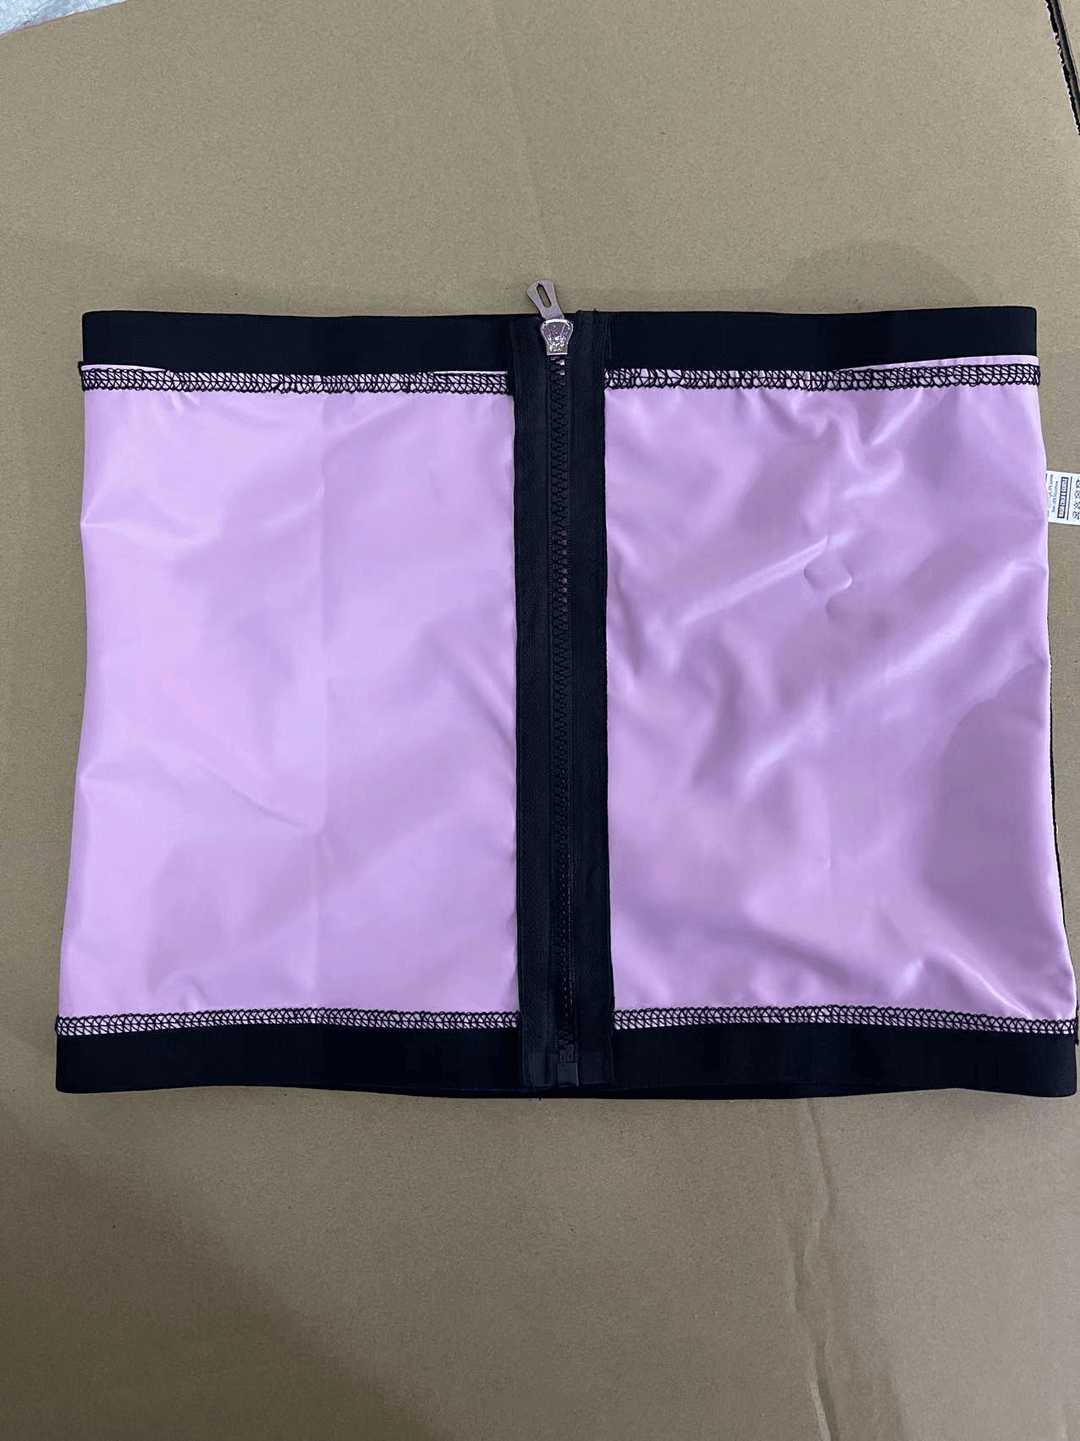 Men'S and Women'S Waist Support Zipper Belly Belt - MRSLM